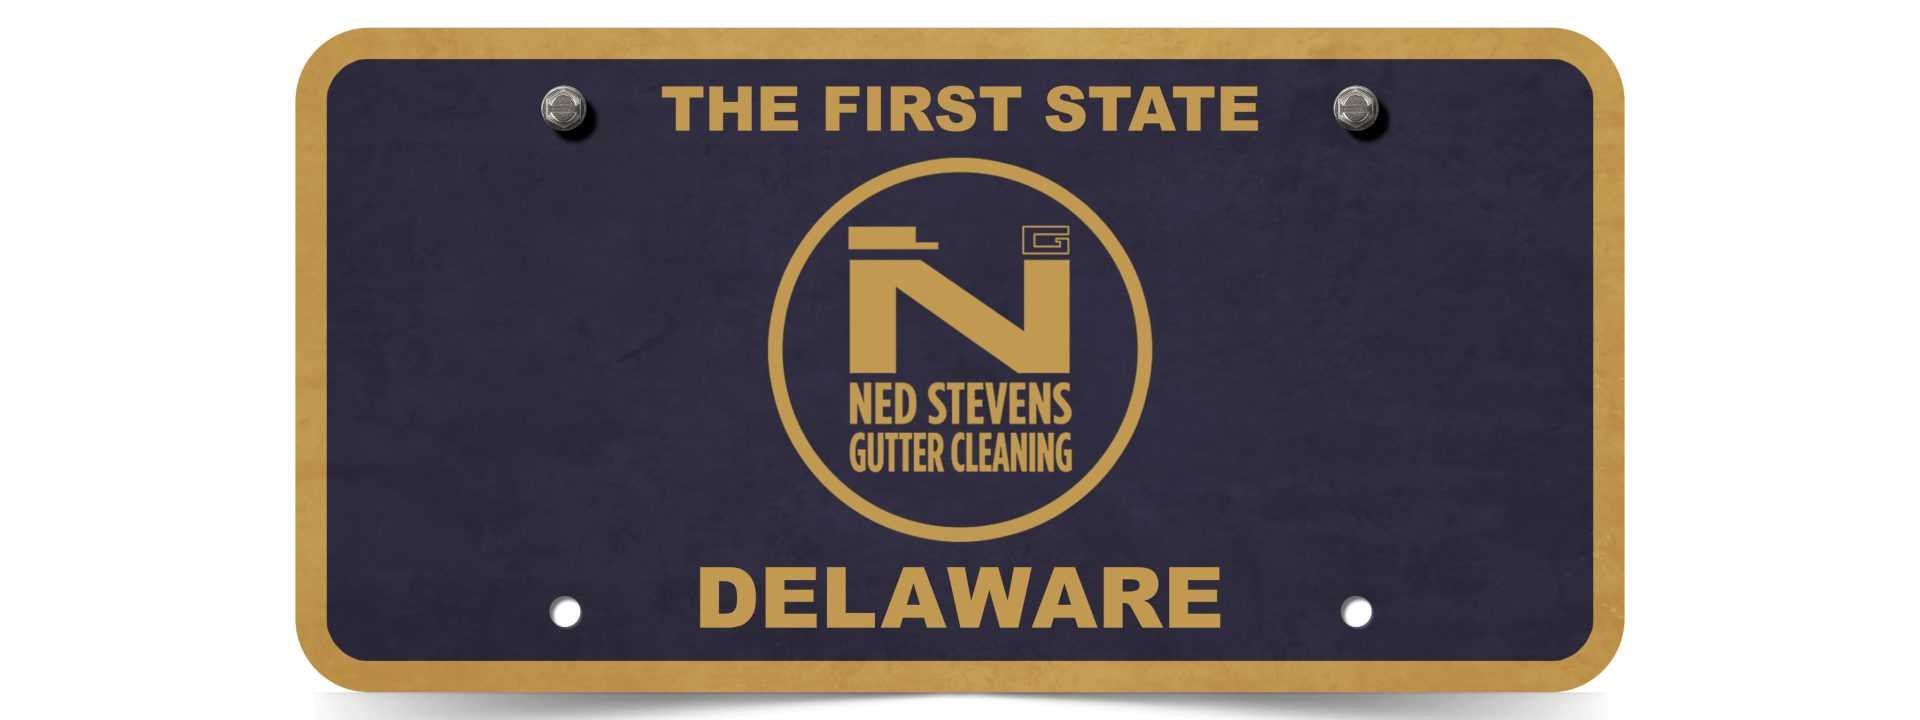 Ned Stevens Brings Gutter Cleaning To Delaware